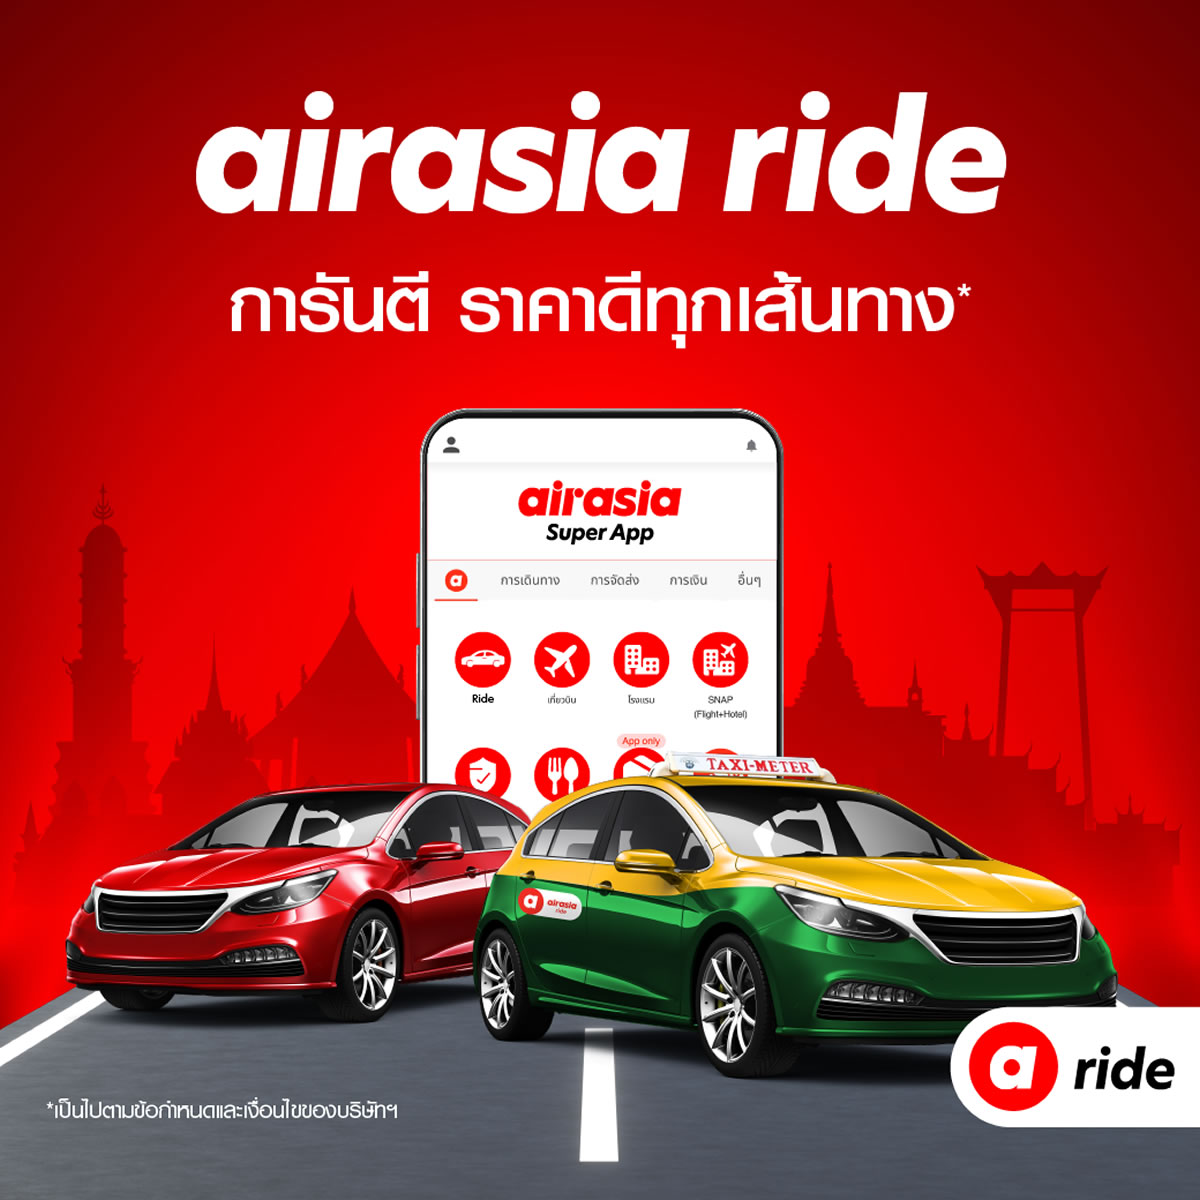 エアアジアがバンコクでタクシー配車サービス「airasia ride」開始、3000台が登録